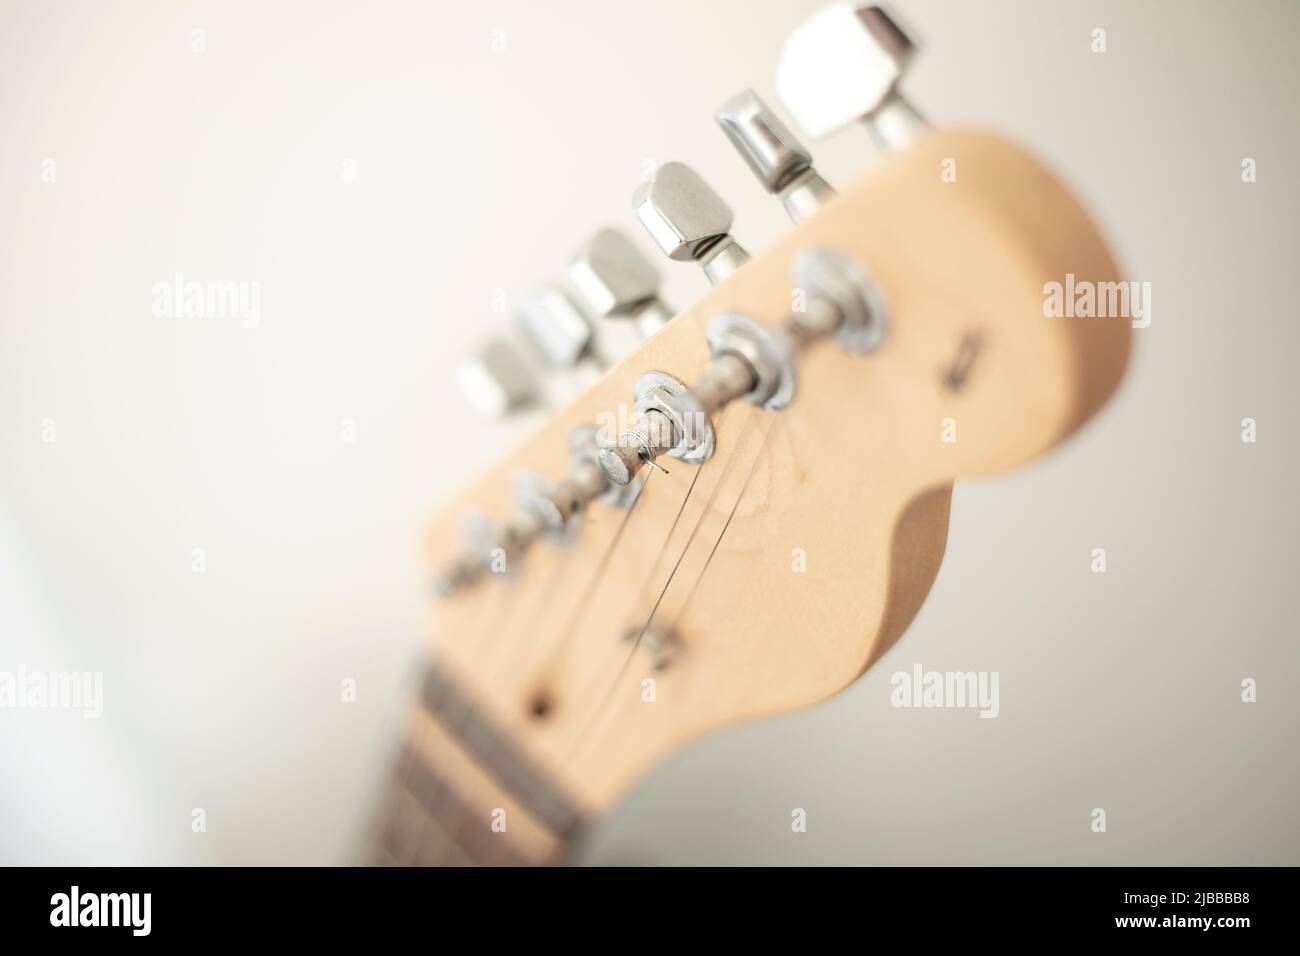 Accordatura musicale immagini e fotografie stock ad alta risoluzione - Alamy